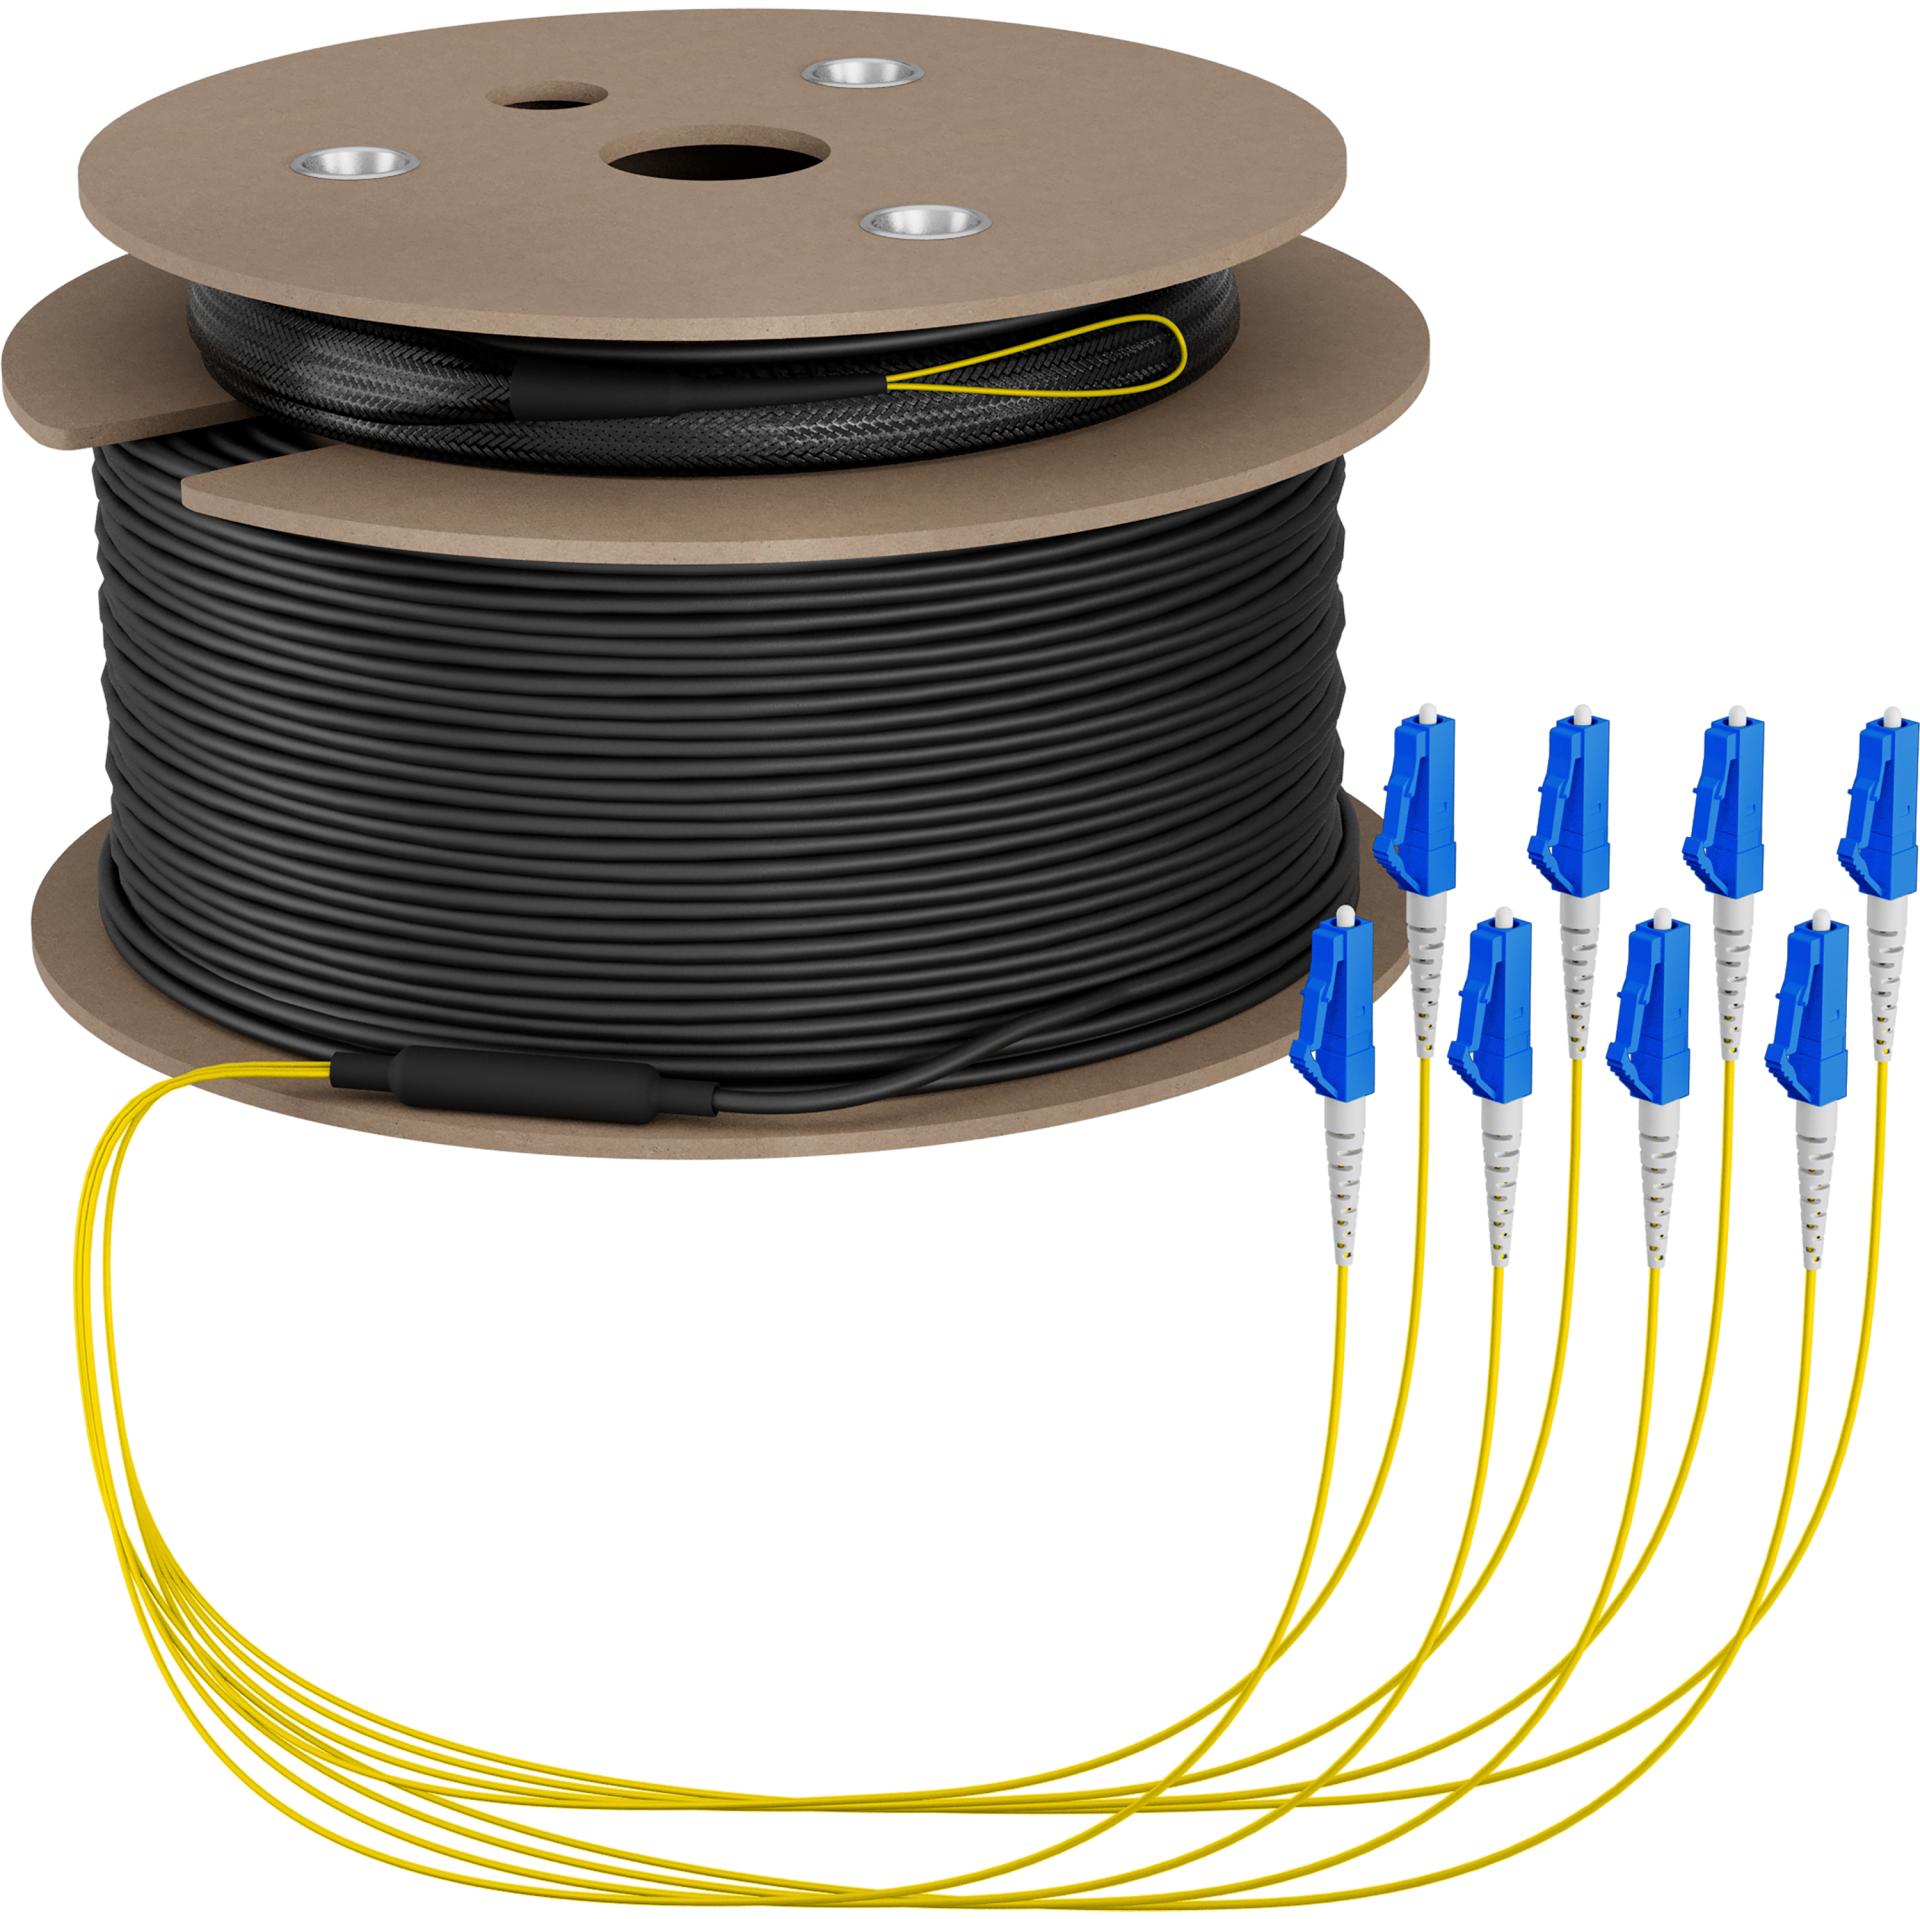 Trunk cable U-DQ(ZN)BH OS2 8E (1x8) LC-LC,150m Dca LSZH